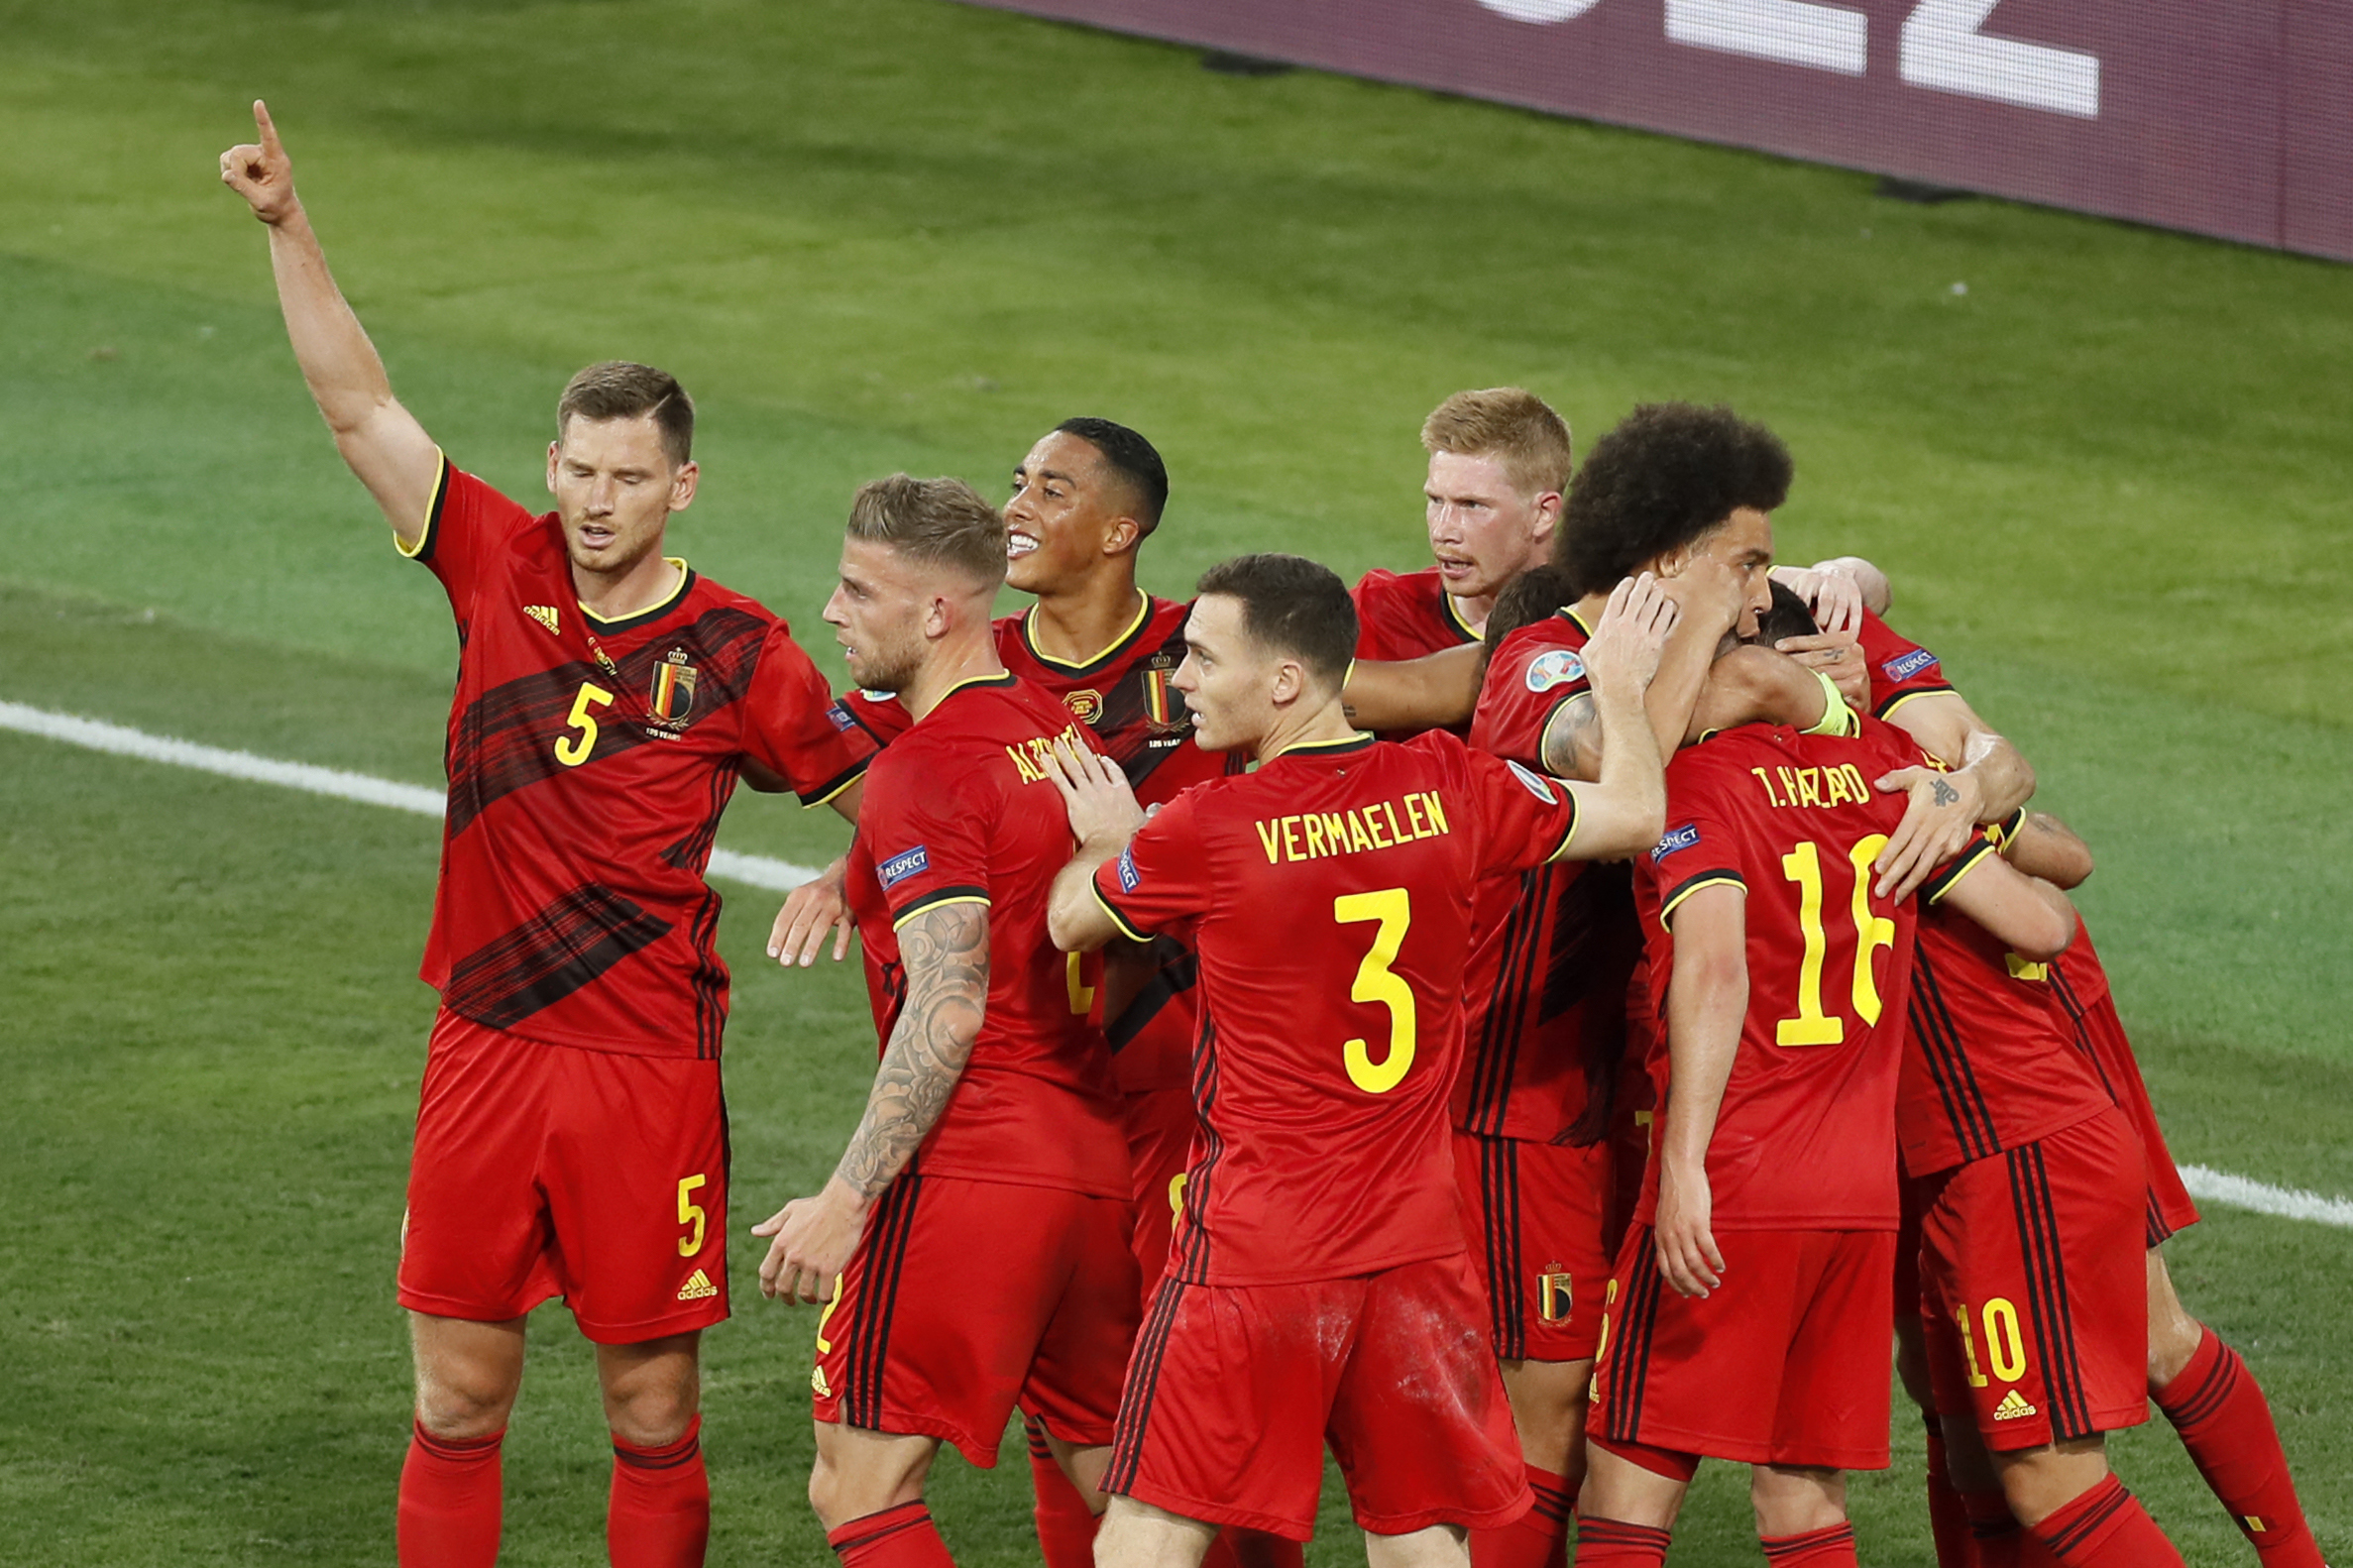 UEFA Nations League: France vs Belgium Match Preview, Team News, And Dream11 Team Prediction | SportzPoint.com